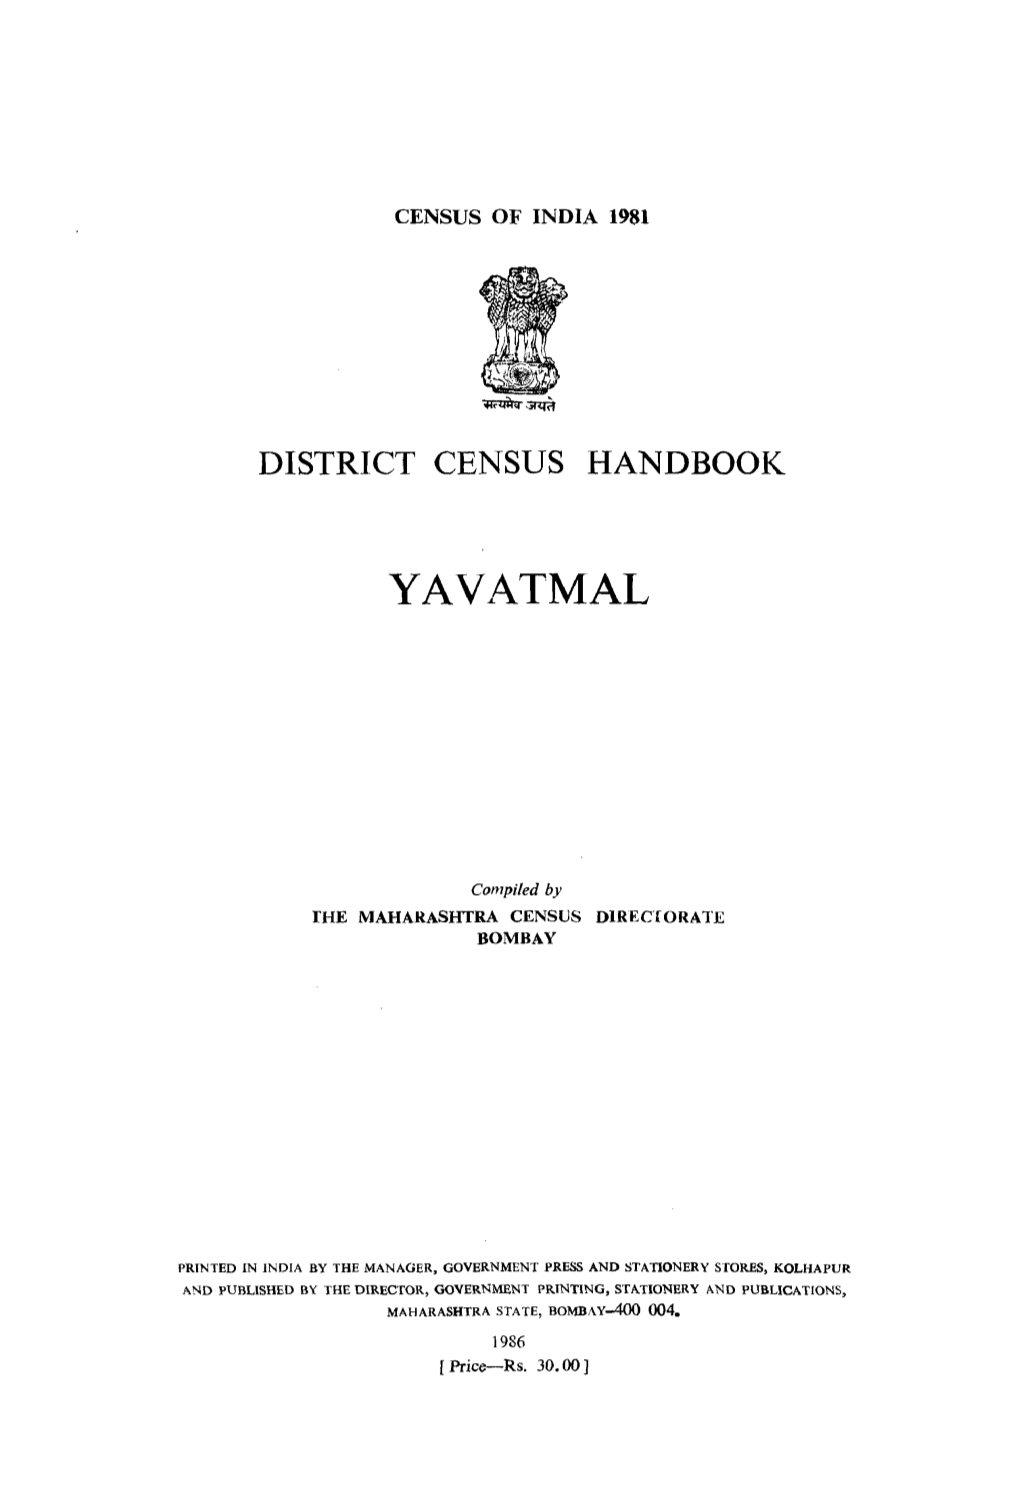 District Census Handbook, Yavatmal